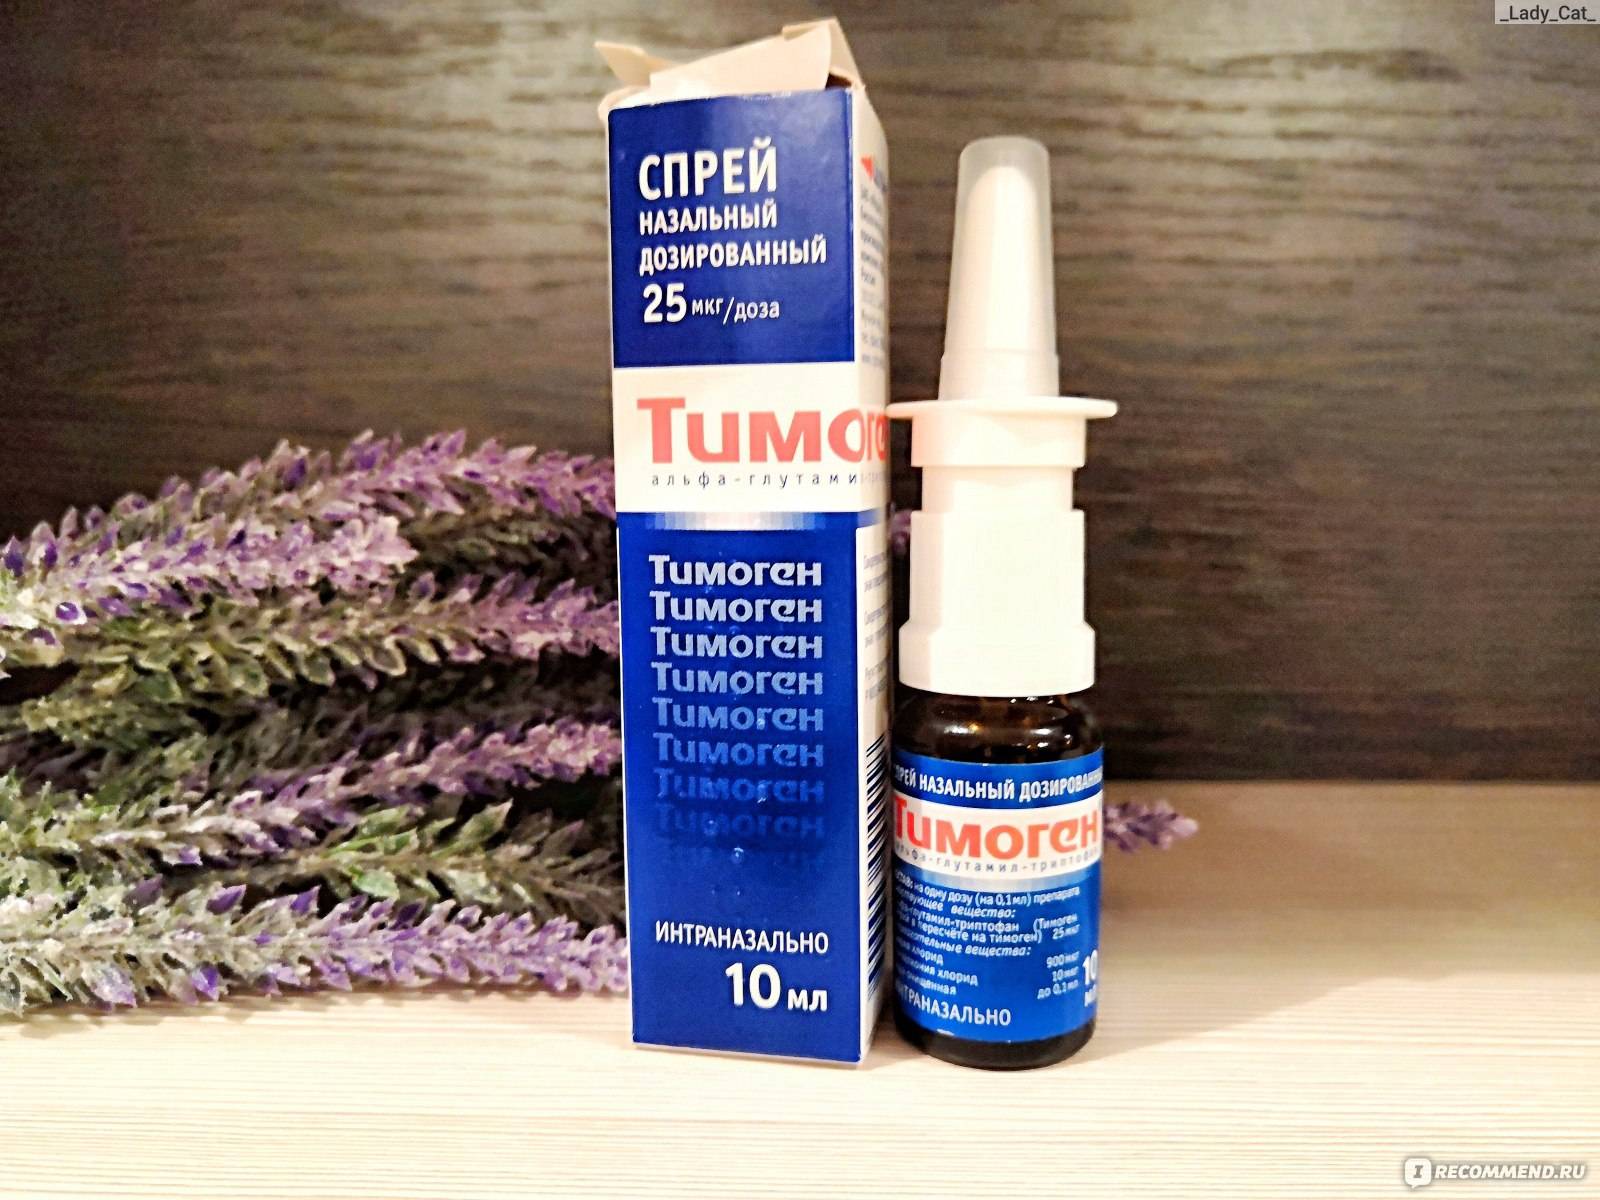 Применение препарата «тимоген»